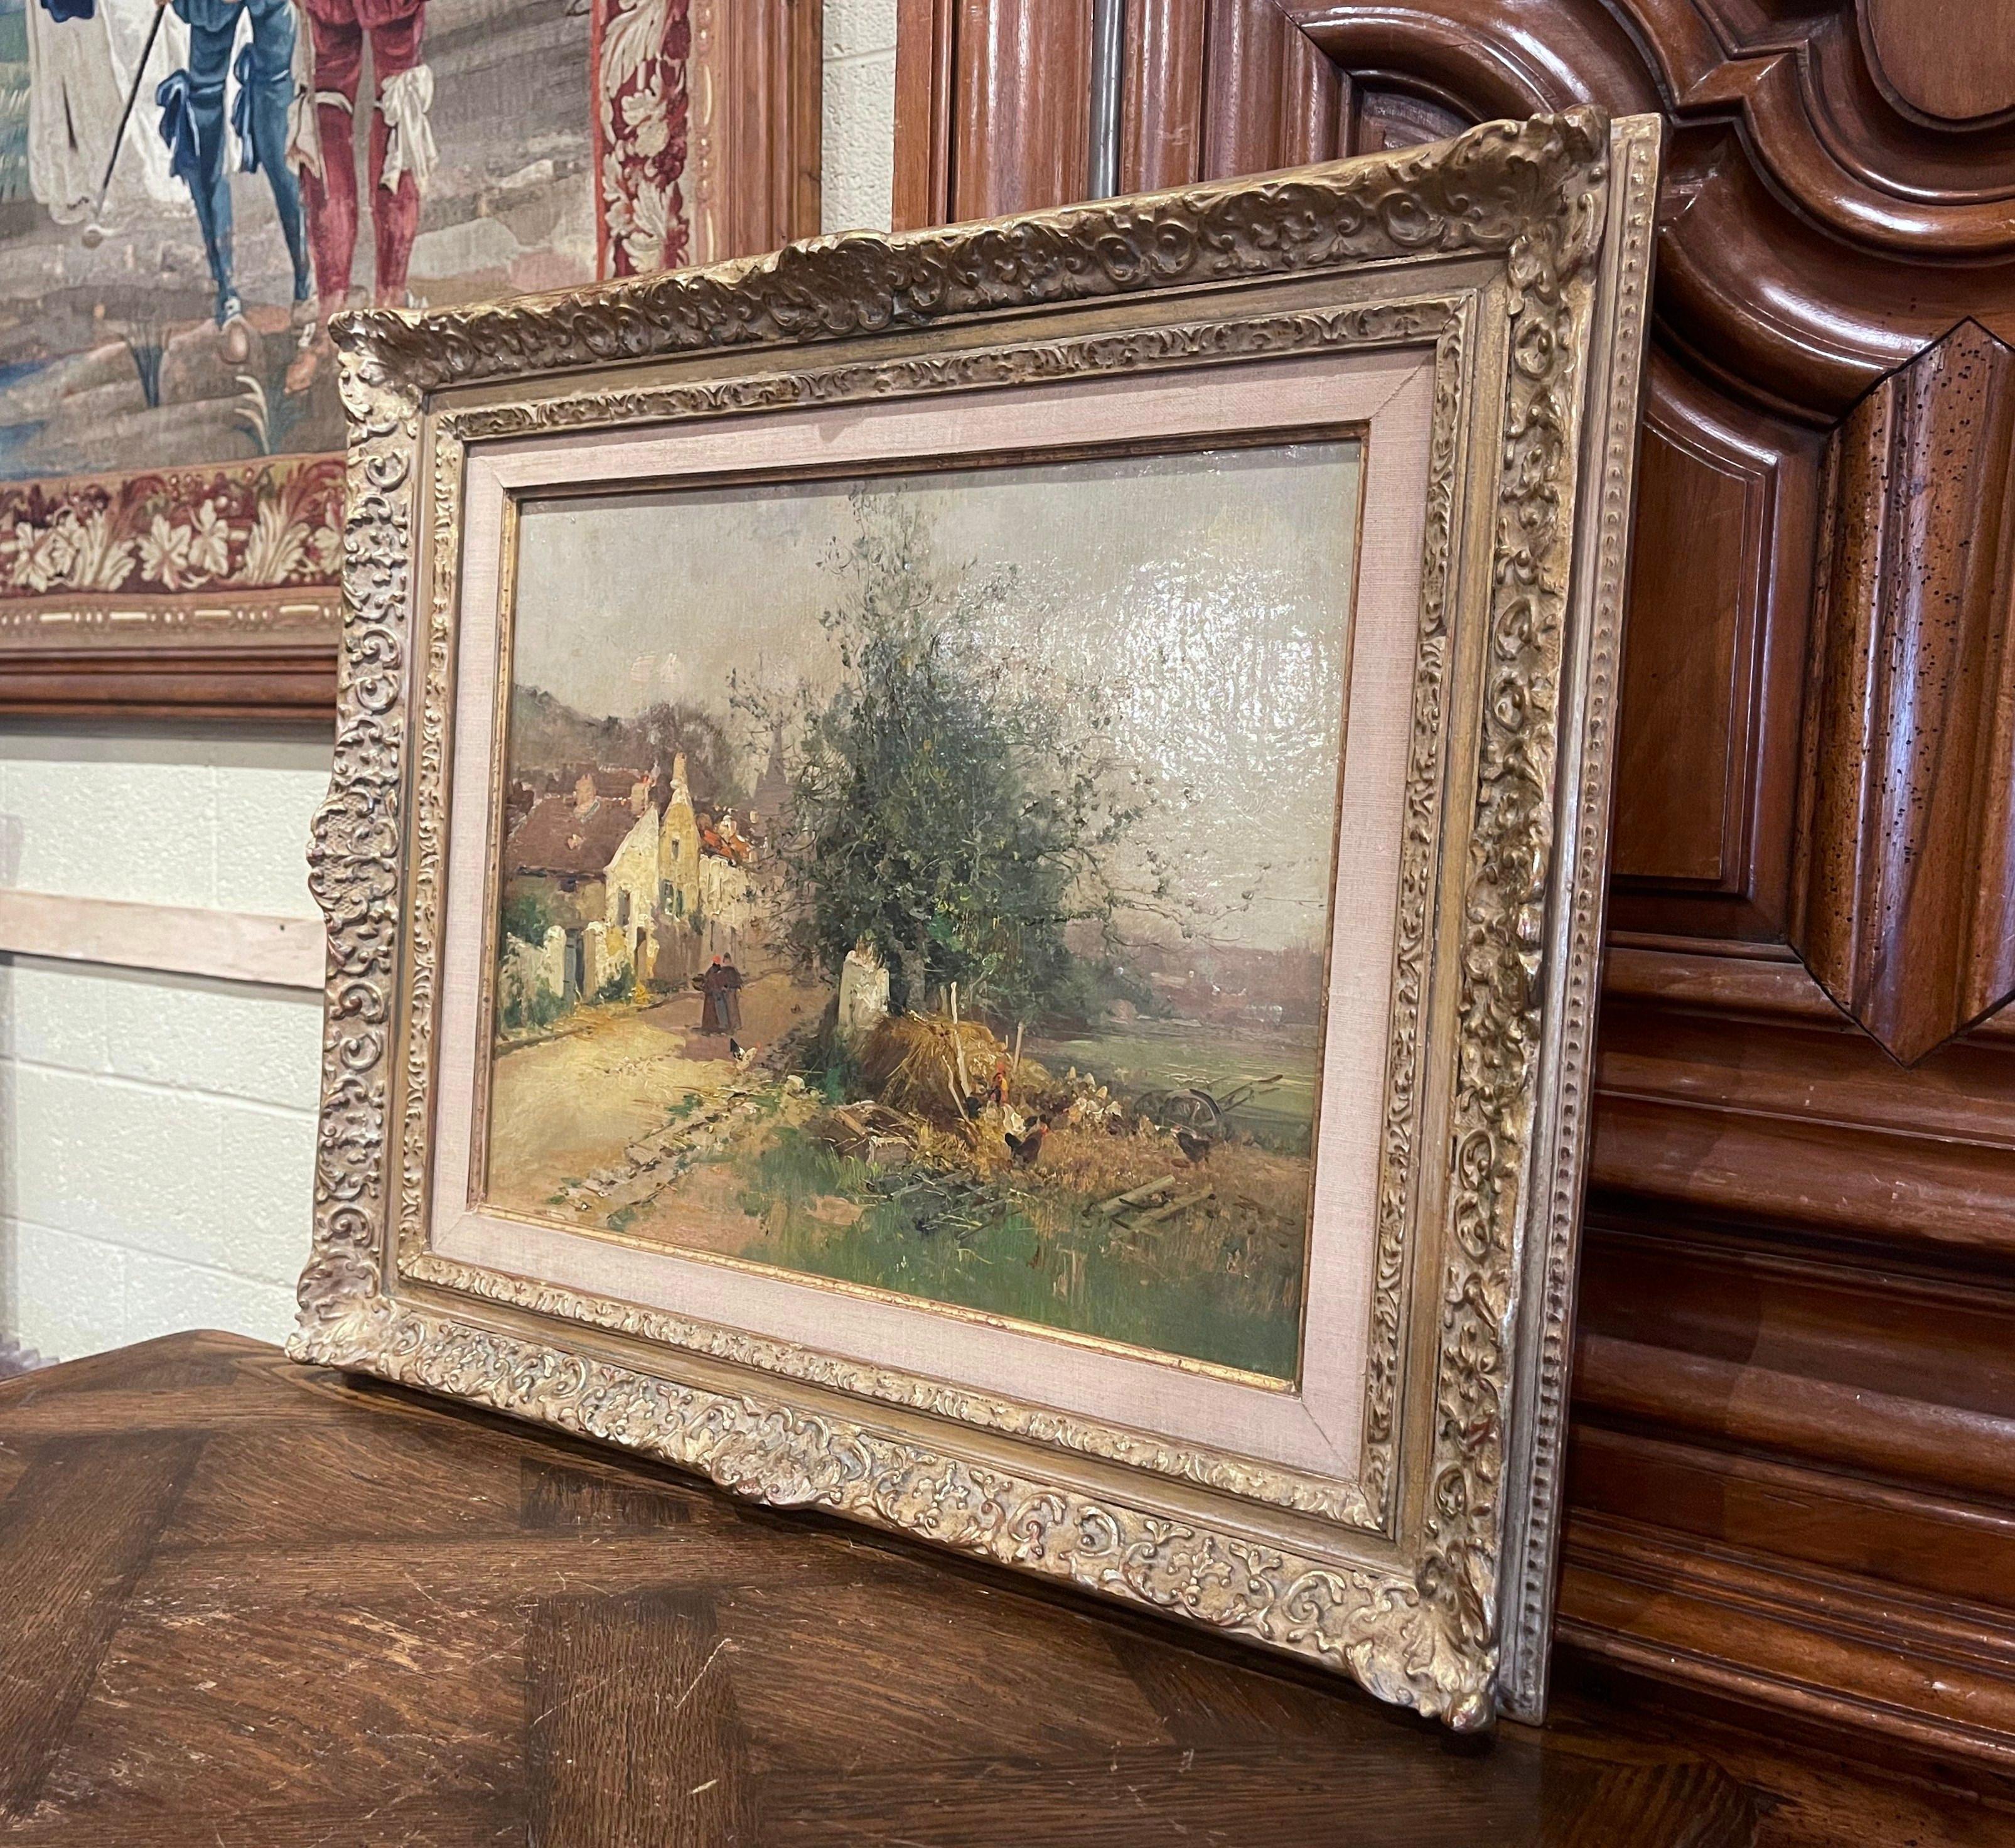 Dieses impressionistische Gemälde aus dem 19. Jahrhundert wurde um 1890 in Frankreich angefertigt. Das auf Leinwand gemalte Kunstwerk in einem geschnitzten Goldholzrahmen zeigt eine malerische Landschaftsszene mit Menschen, Hühnern, einem Dorf und